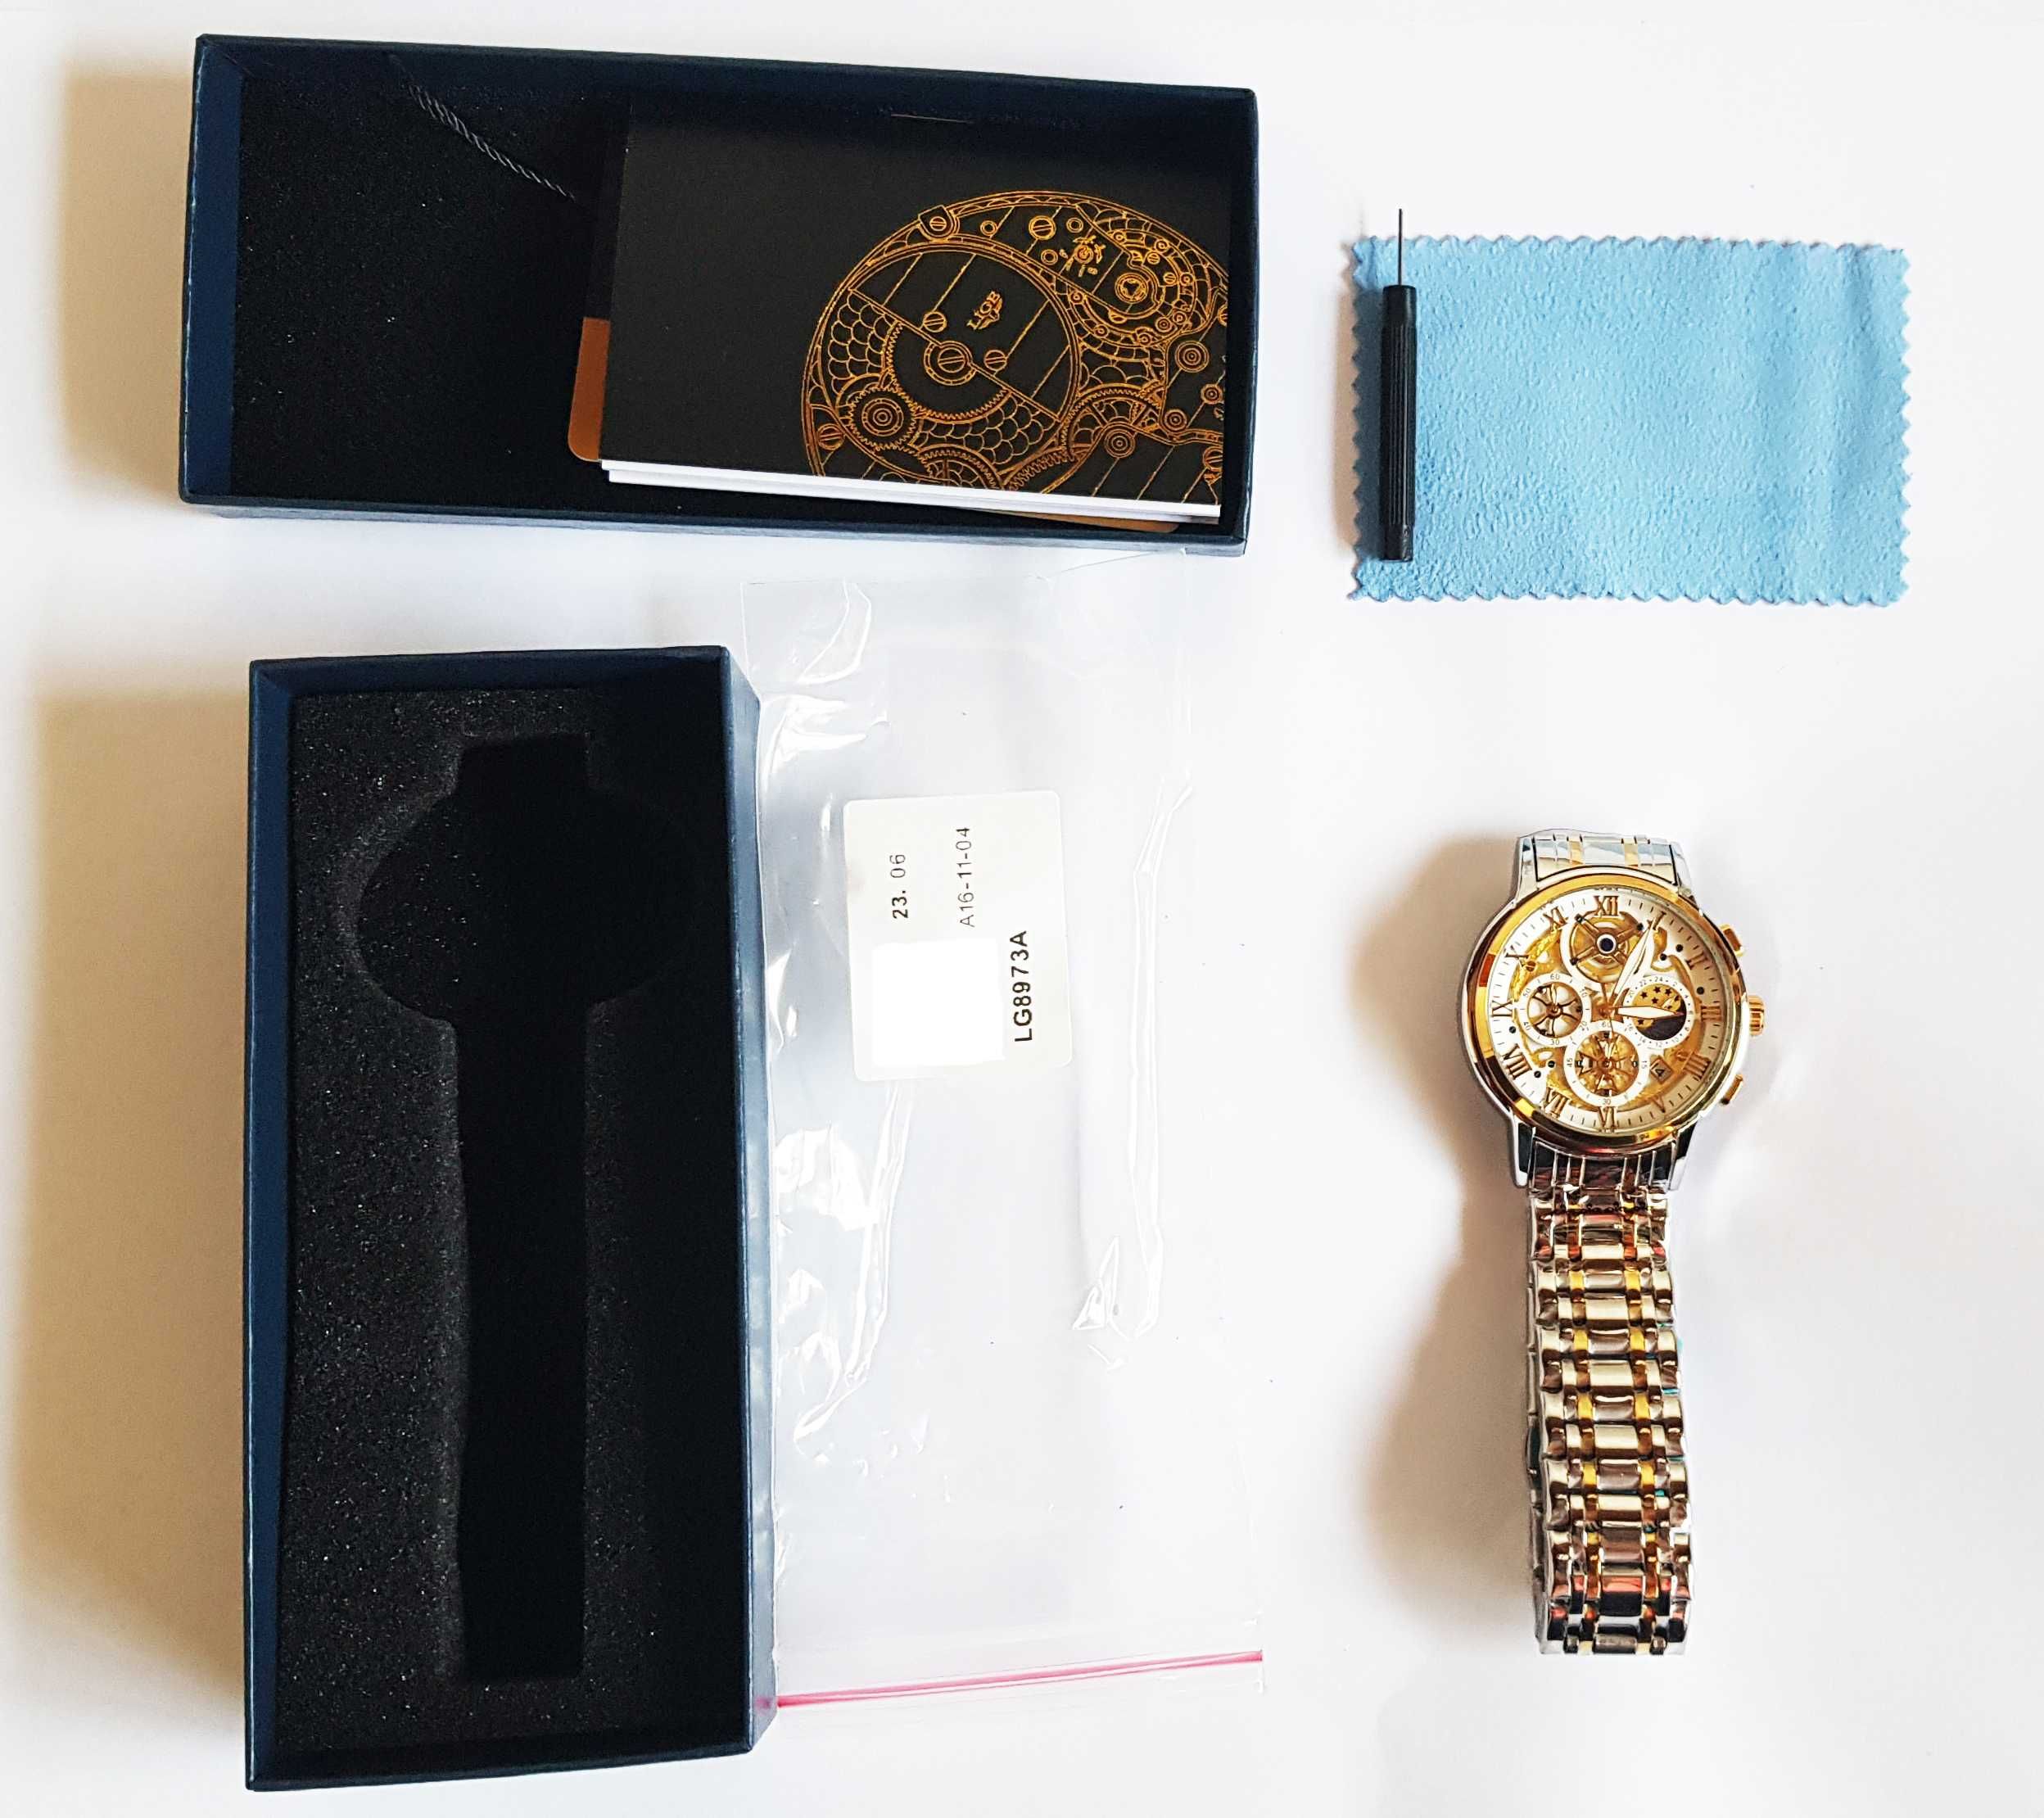 Relógio Quartzo, Design de Luxo, para Homem (NOVO) = 40 euros